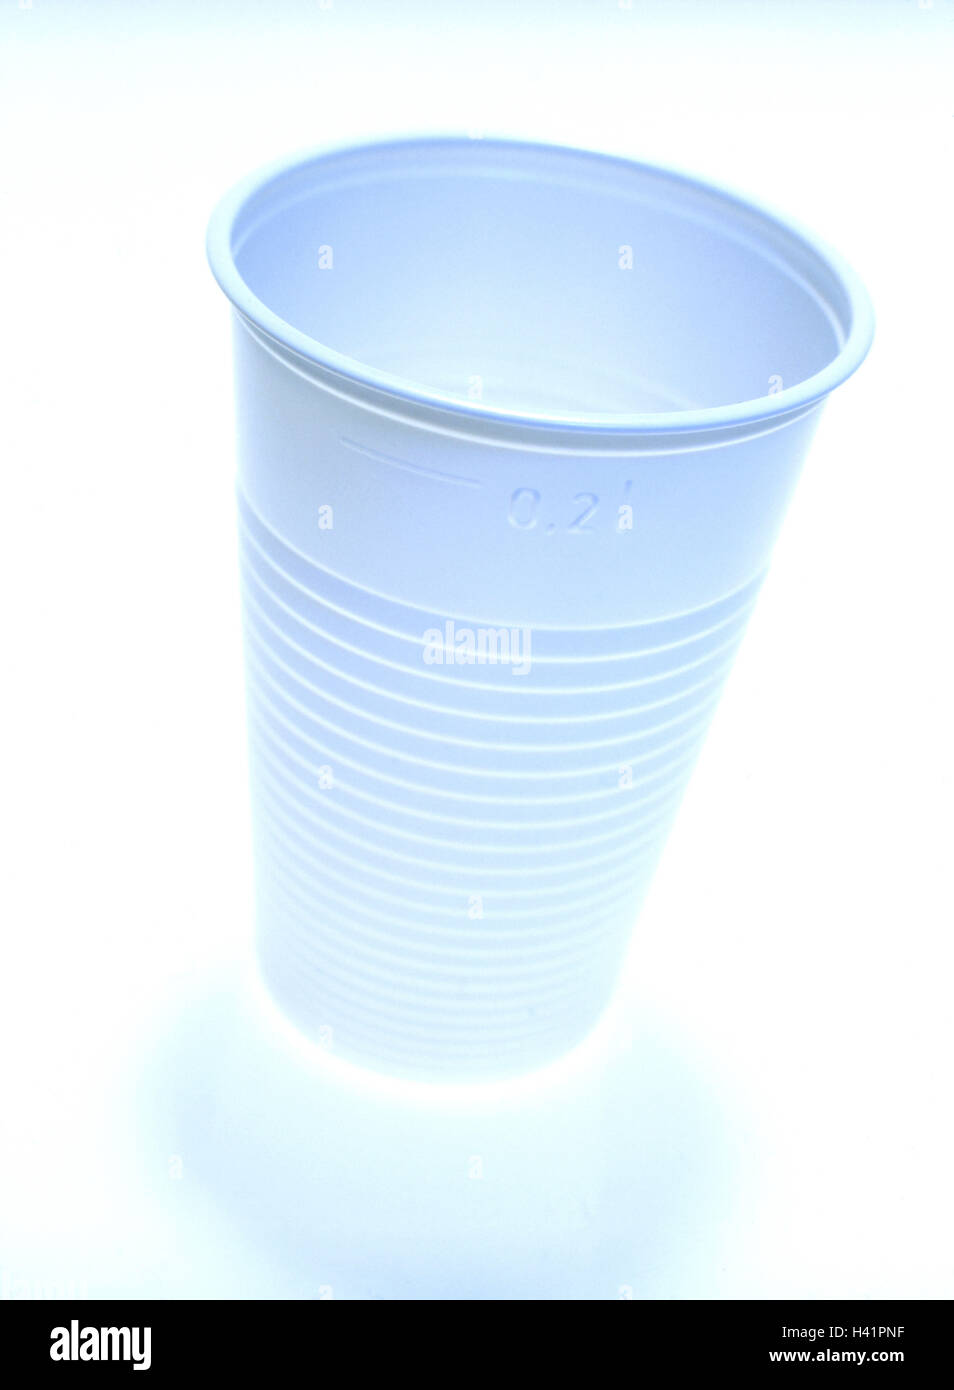 Tasse en plastique jetables en plastique, vaisselle, plats, vaisselle en plastique jetable, produit, capable de recyclage, recyclables, recyclables, réservoir, récipient à boire, mug, 0,2 l, plastique, plastique, jetable, mug mug mug en plastique, potable, blanc, photographie de produits, Stil Banque D'Images